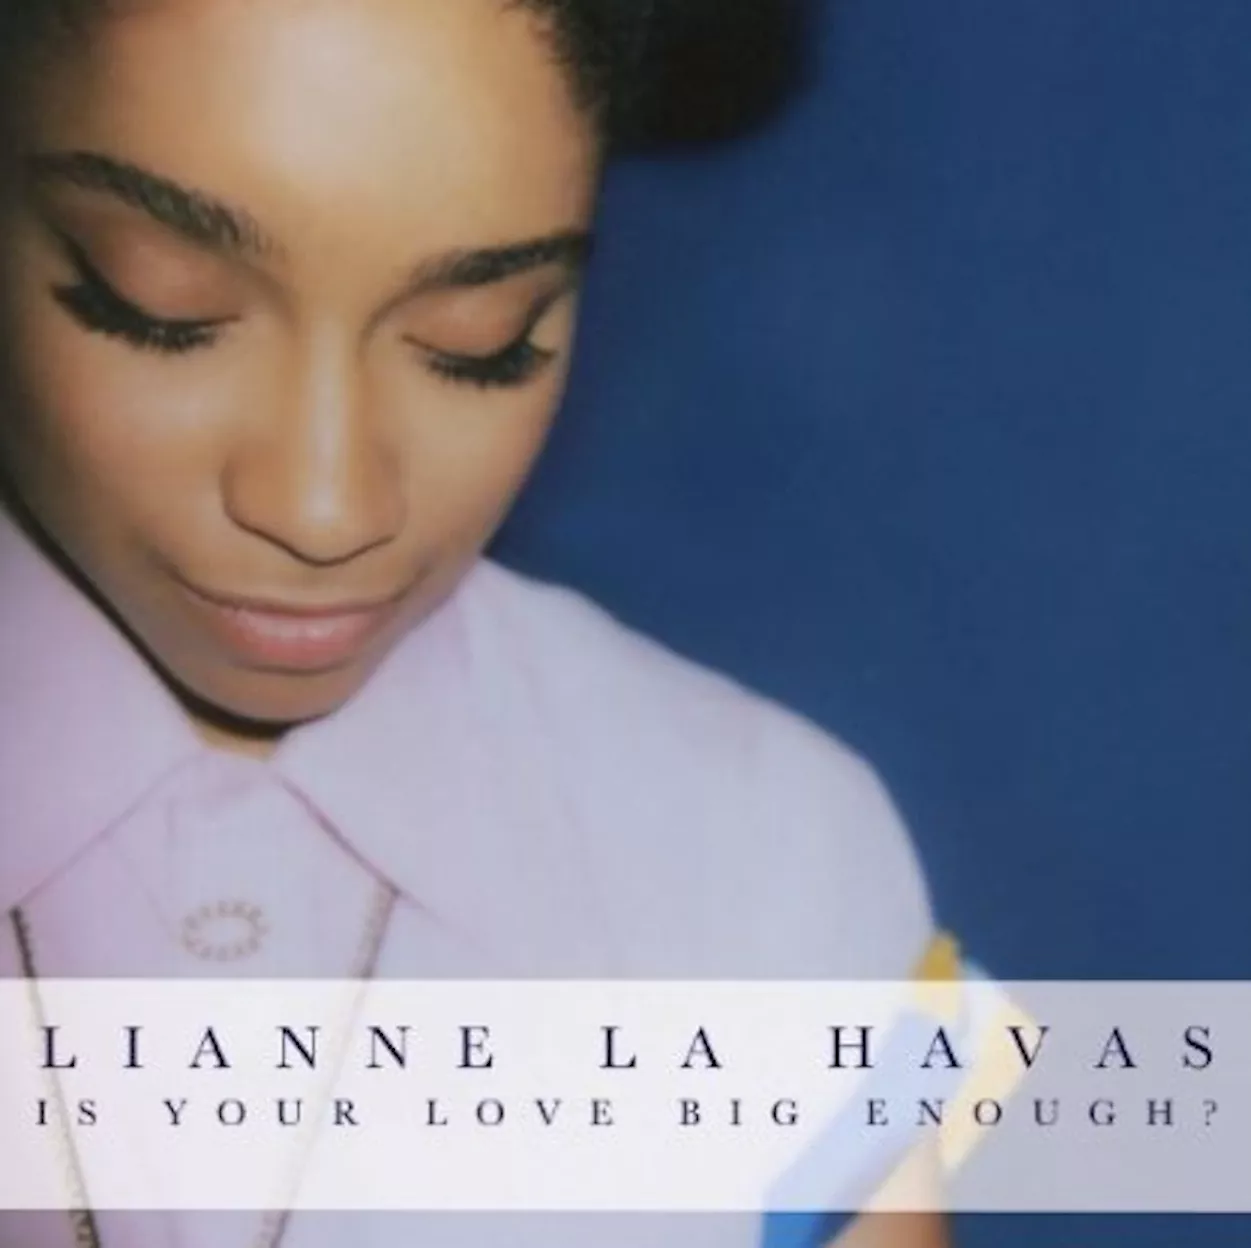 Is Your Love Big Enough? - Lianne La Havas